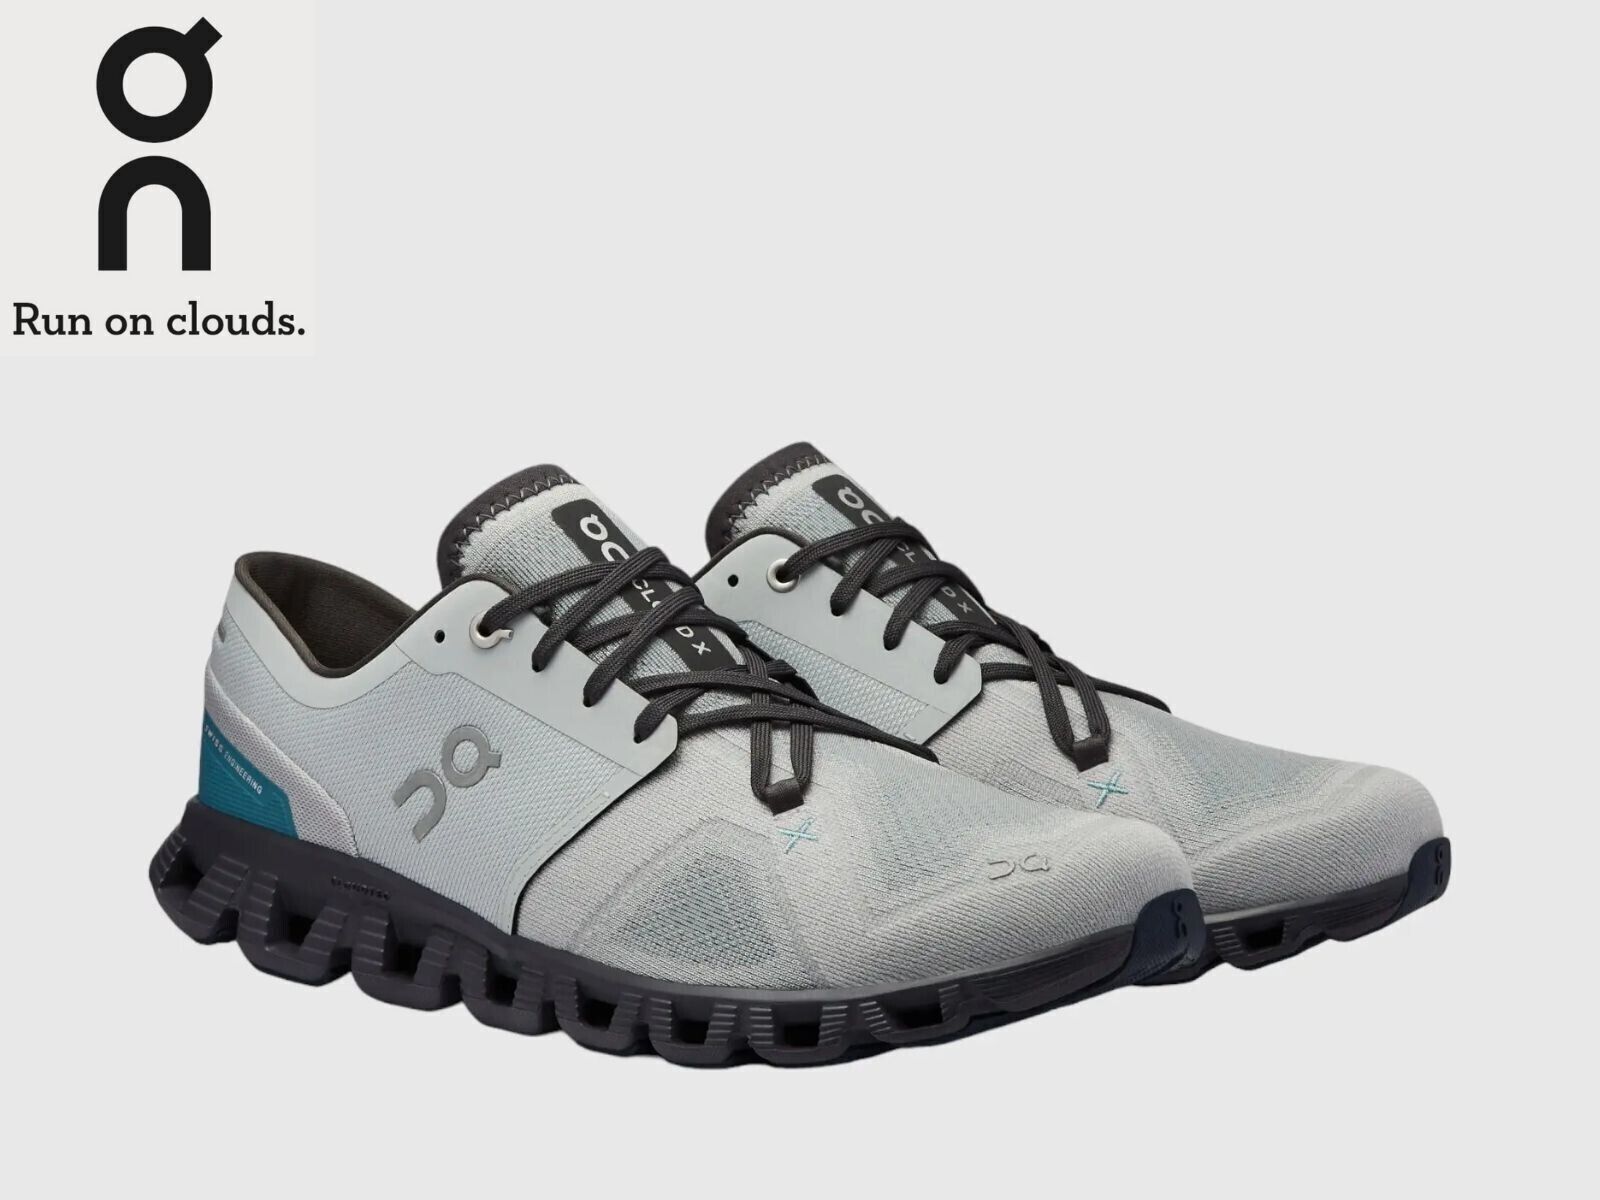 SALE OFF ON CLOUD X 3 Men's Running Shoes Color Glacier | Iron US Size ^-^